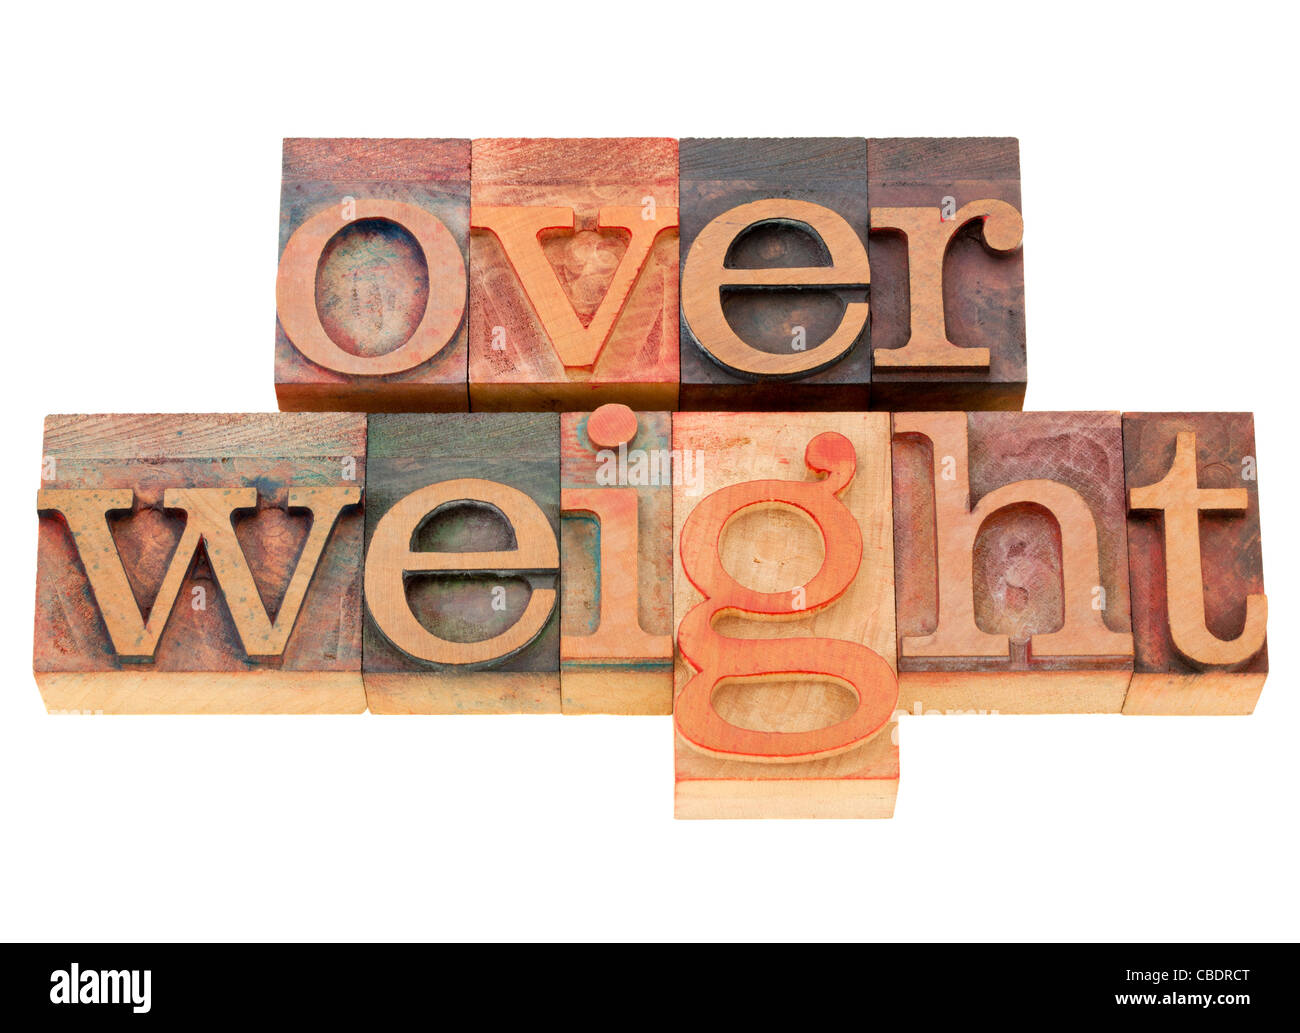 Sobrepeso - problema de salud - palabra aislada en vintage tipografía bloques de madera Foto de stock